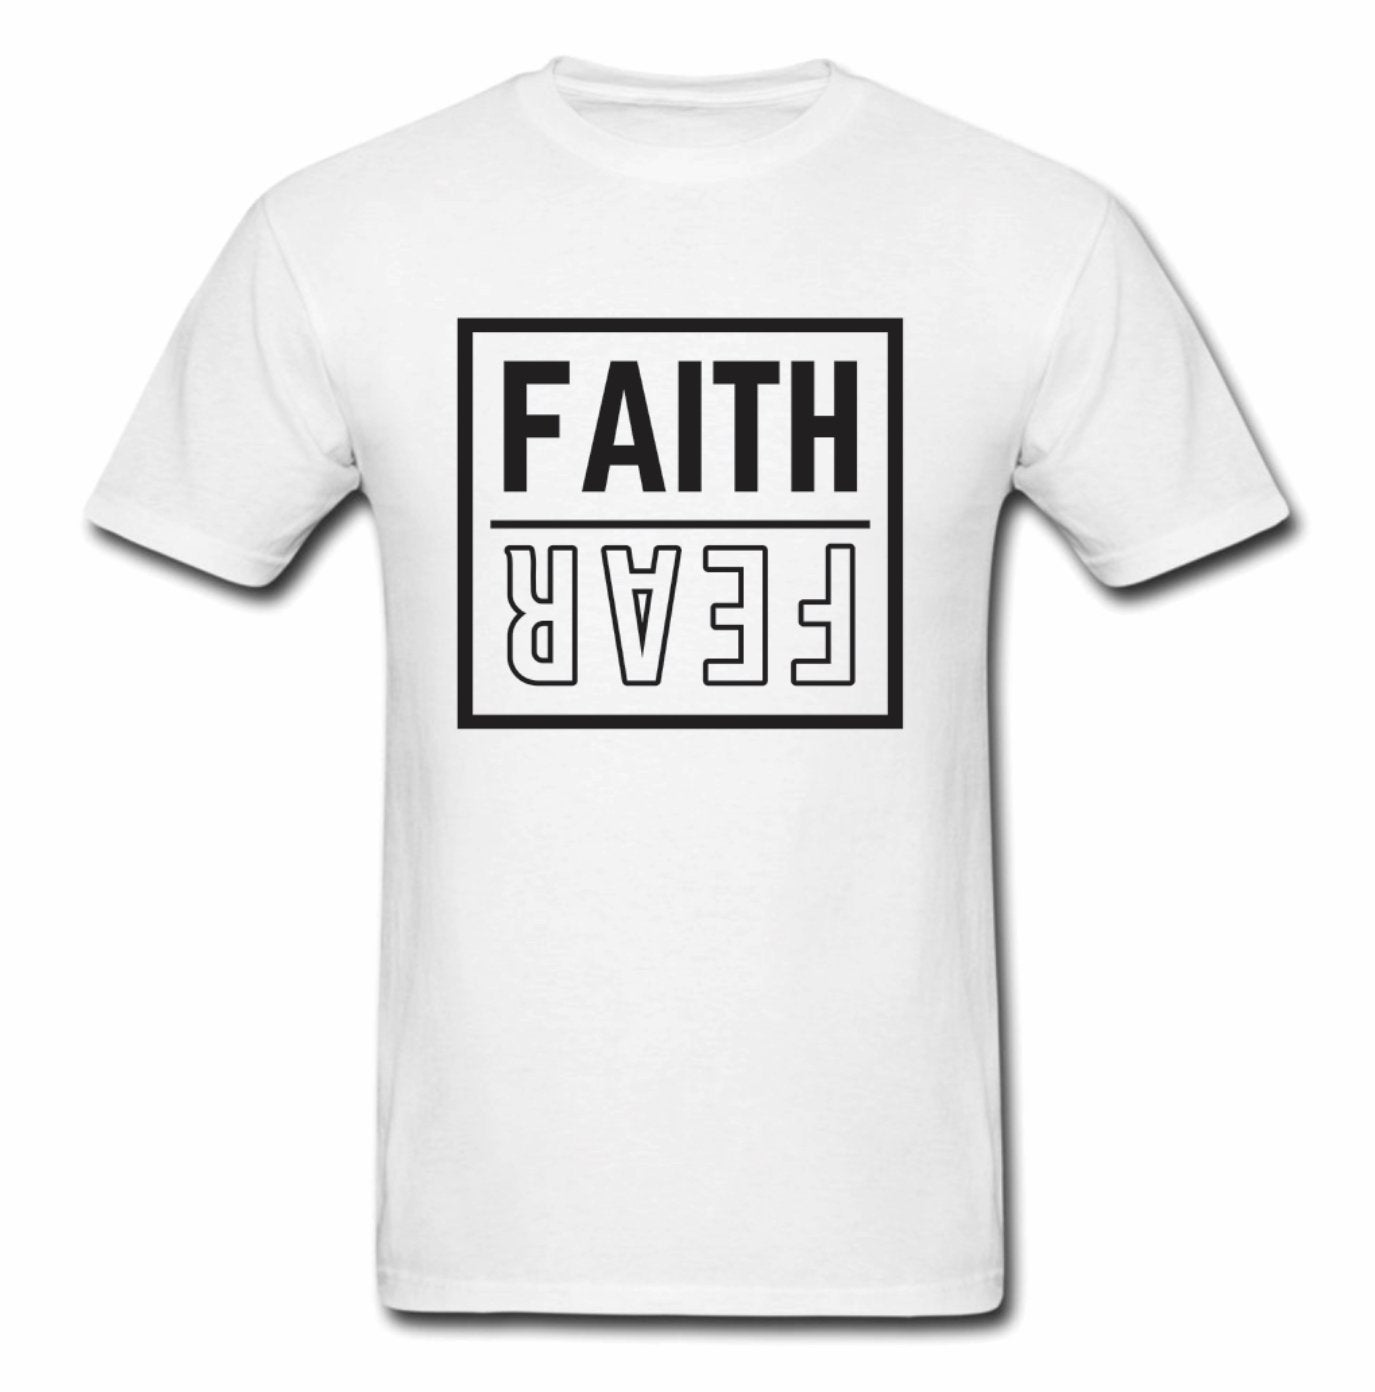 Faith Over Fear Shirt (Men & Women)